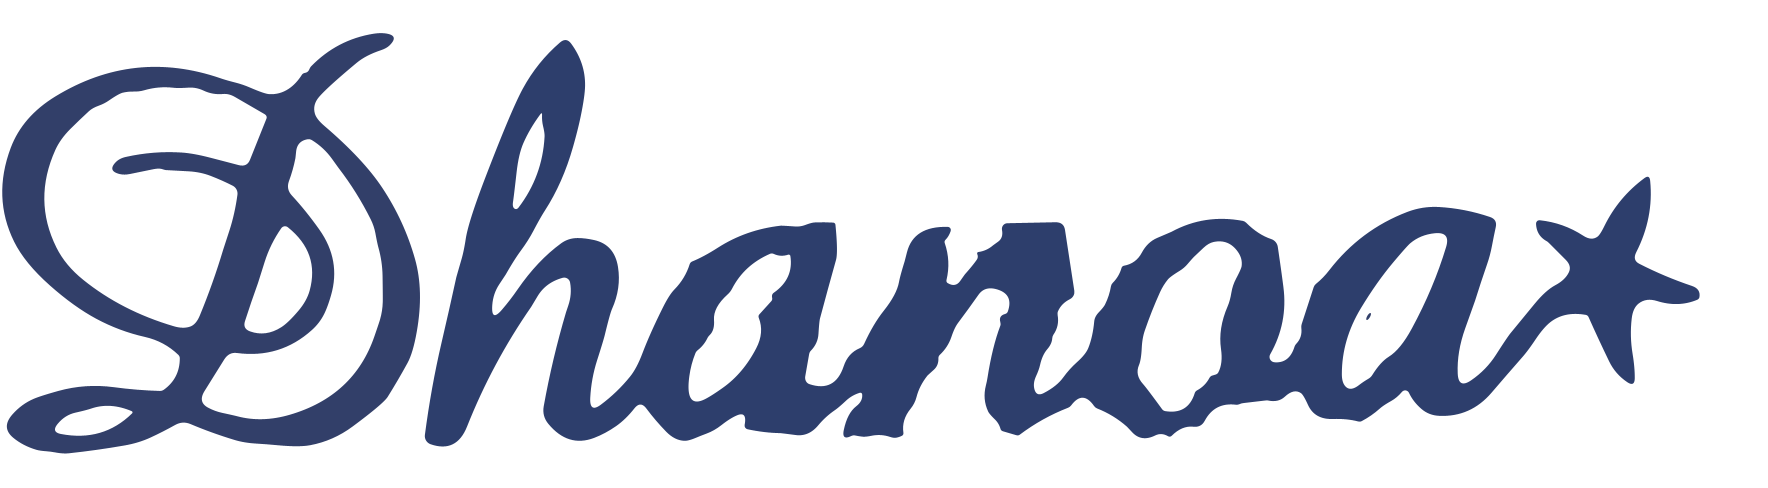 Dhanoa logo